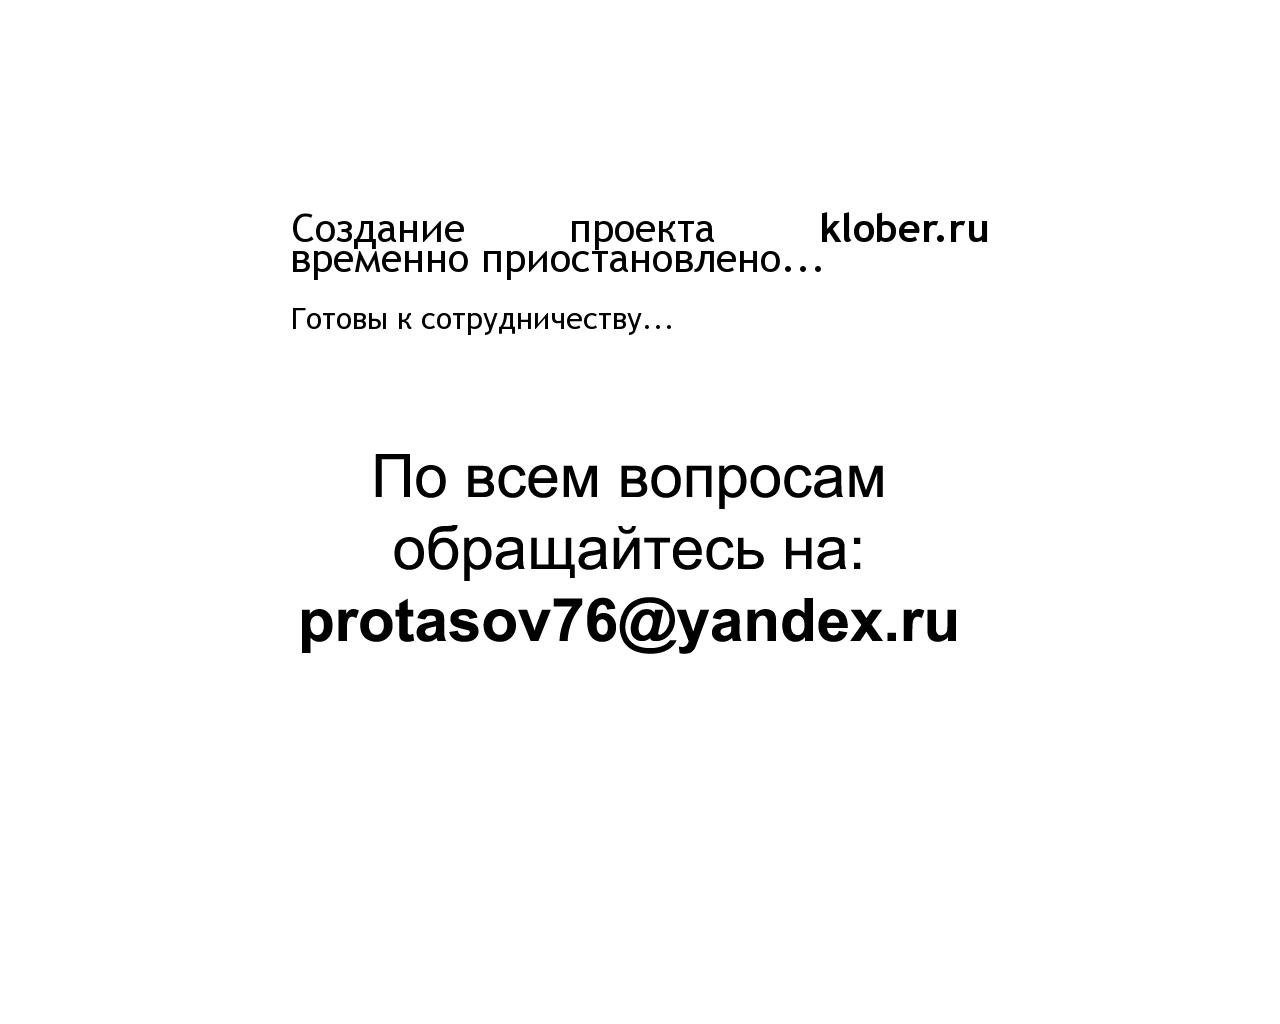 Изображение сайта klober.ru в разрешении 1280x1024